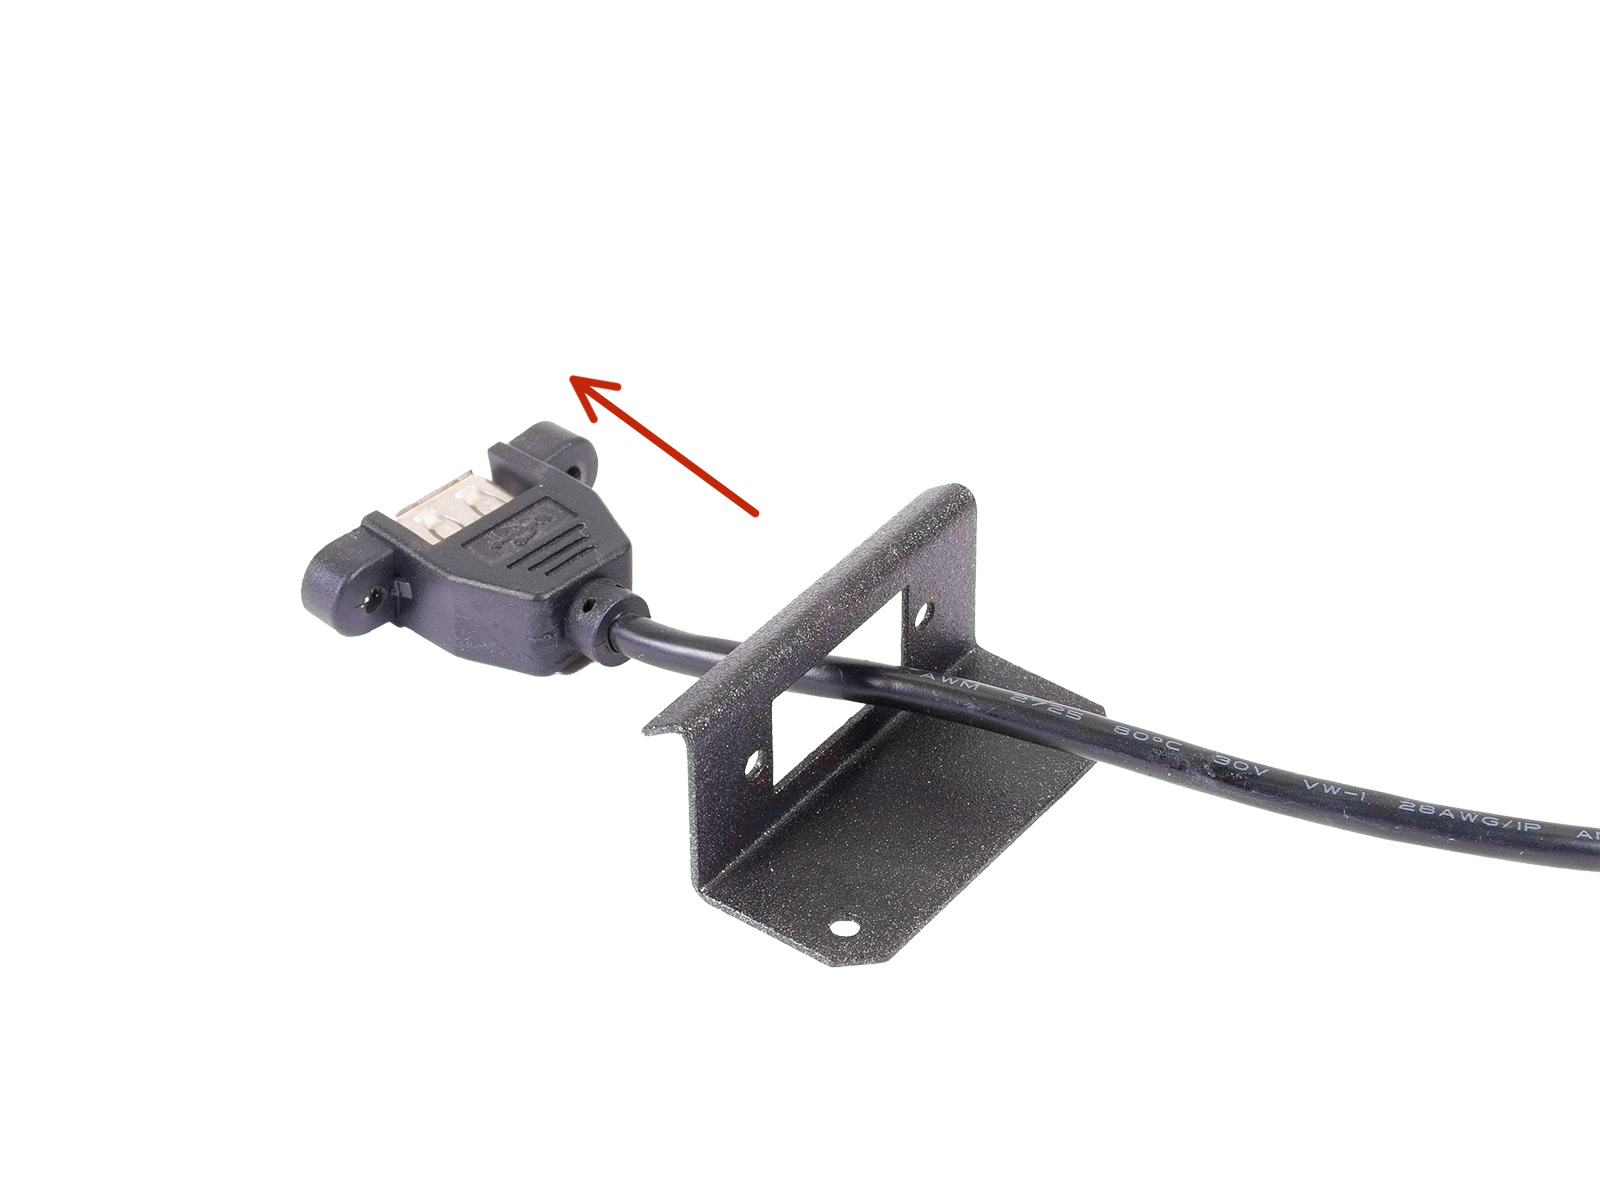 Démontage du connecteur USB (Version 1.0)